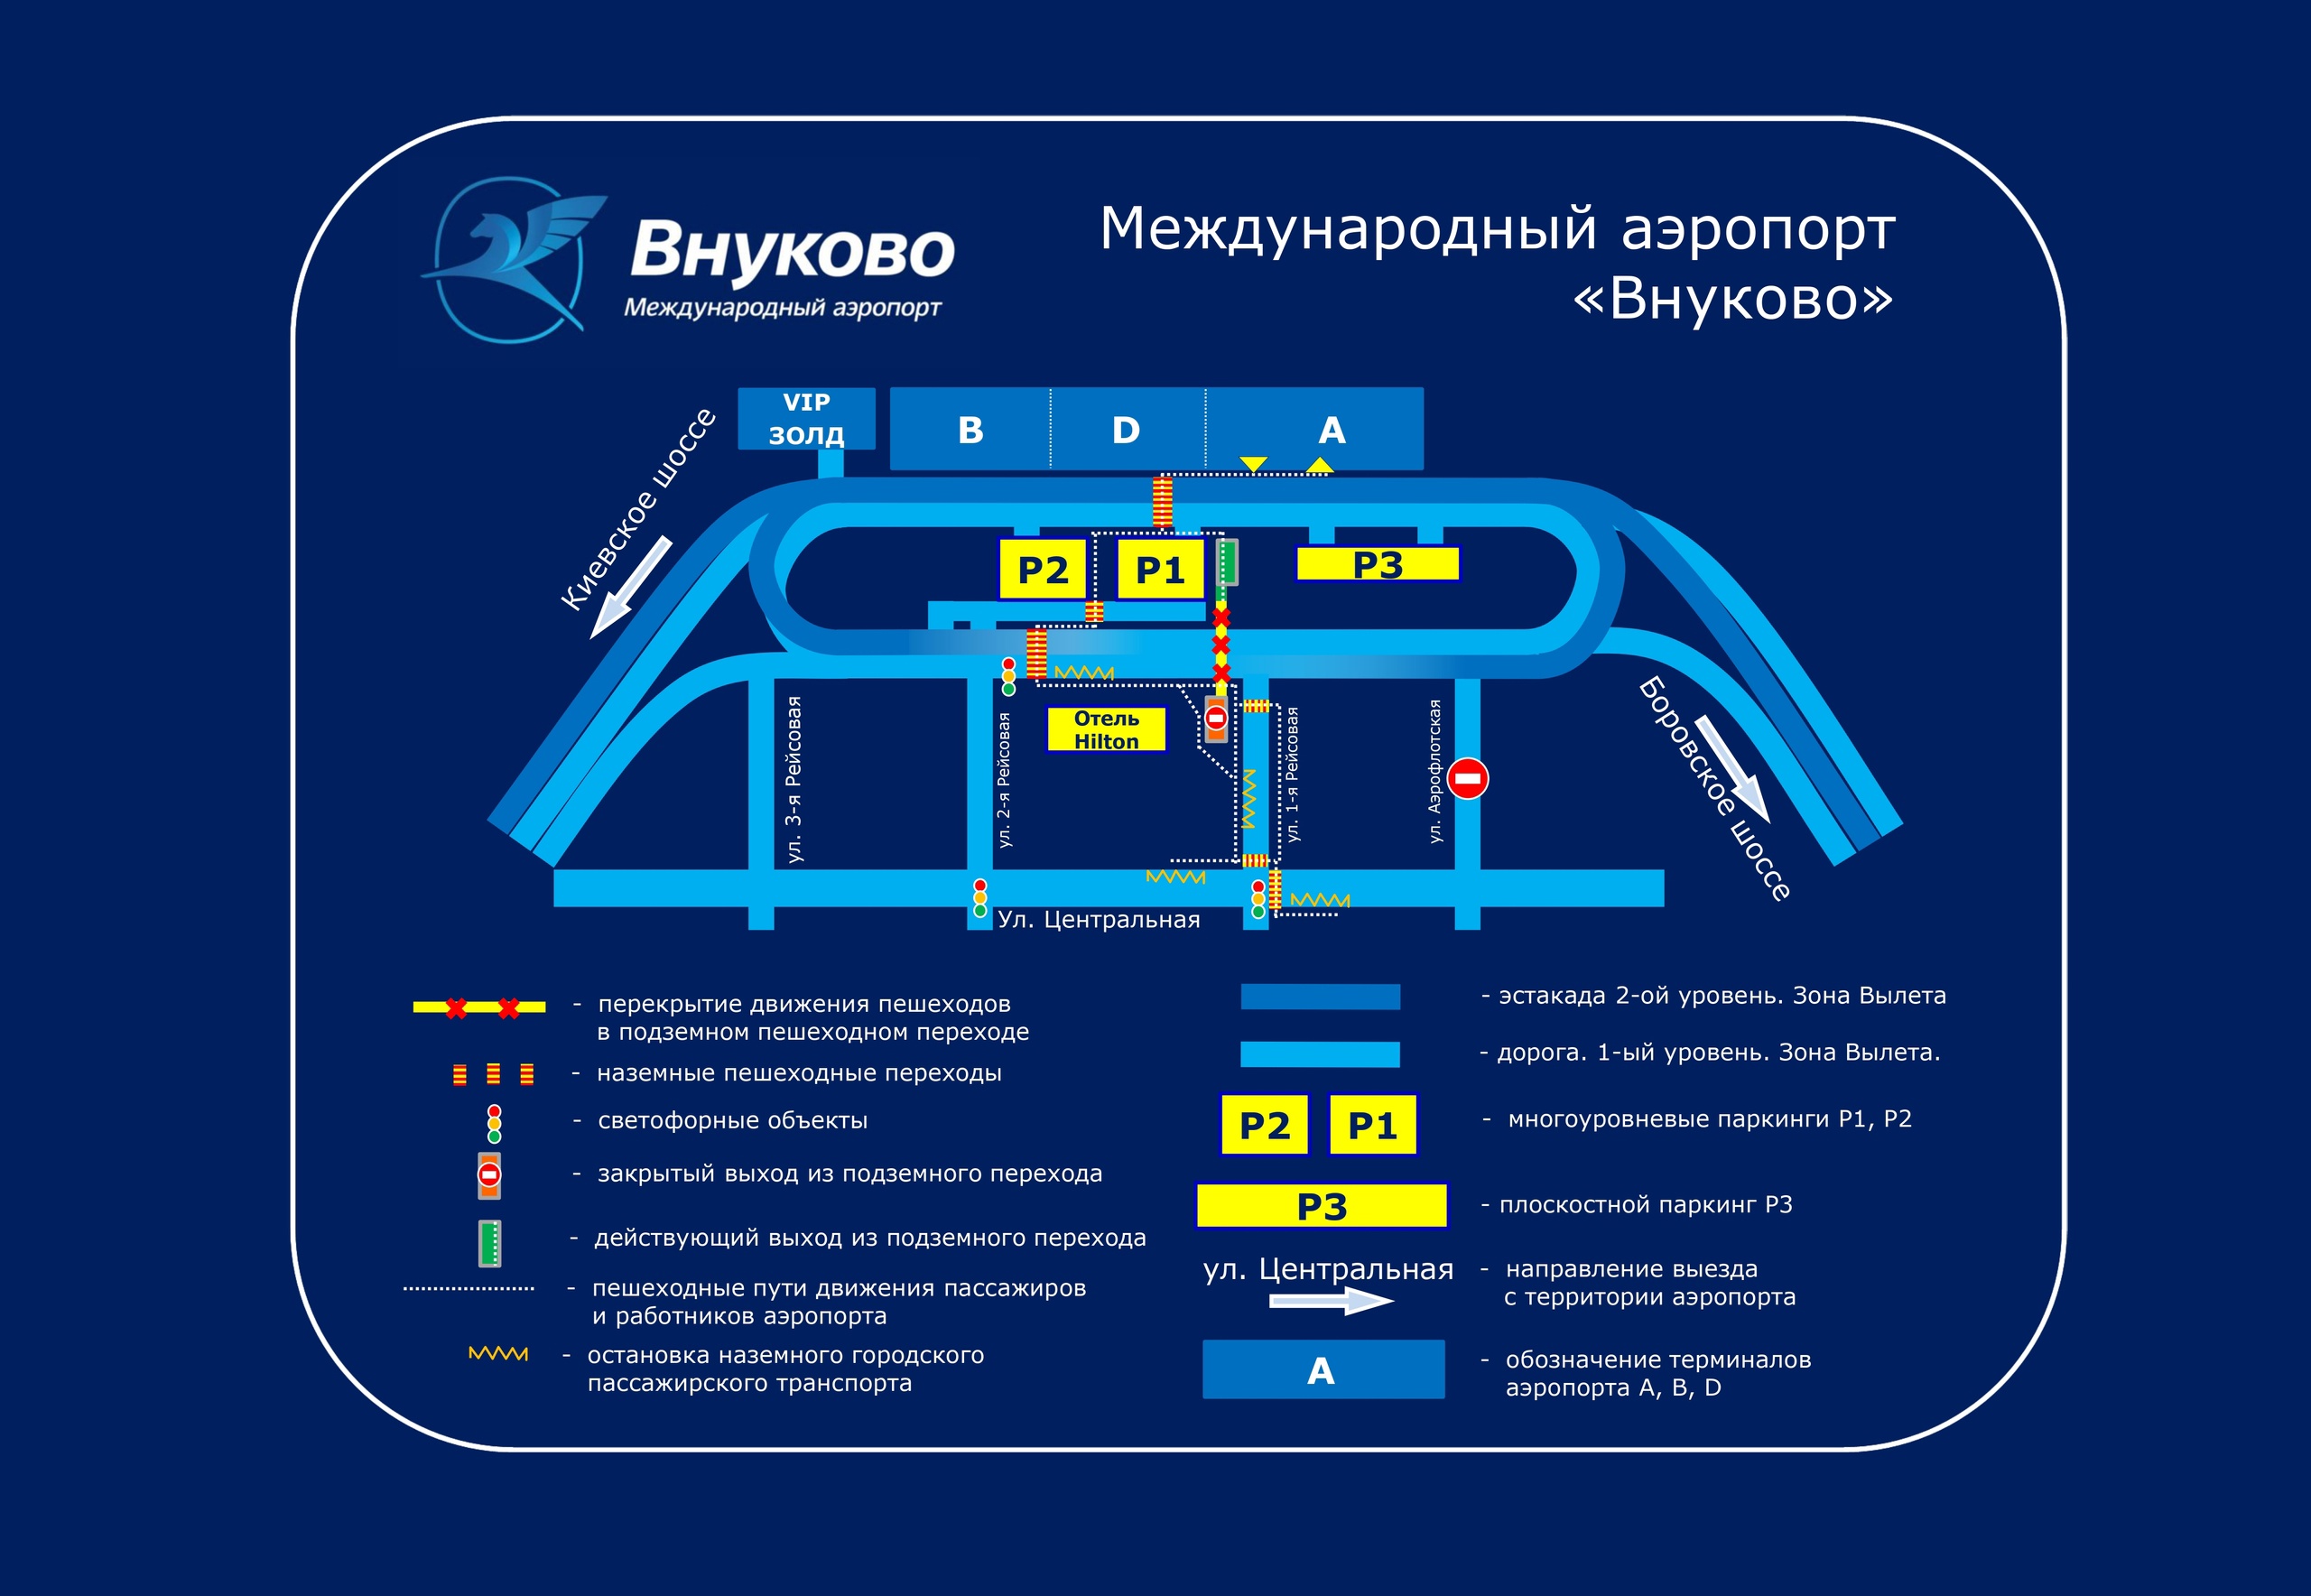 关于伏努科沃机场 A 航站楼部分地下通道交通困难和关闭的信息